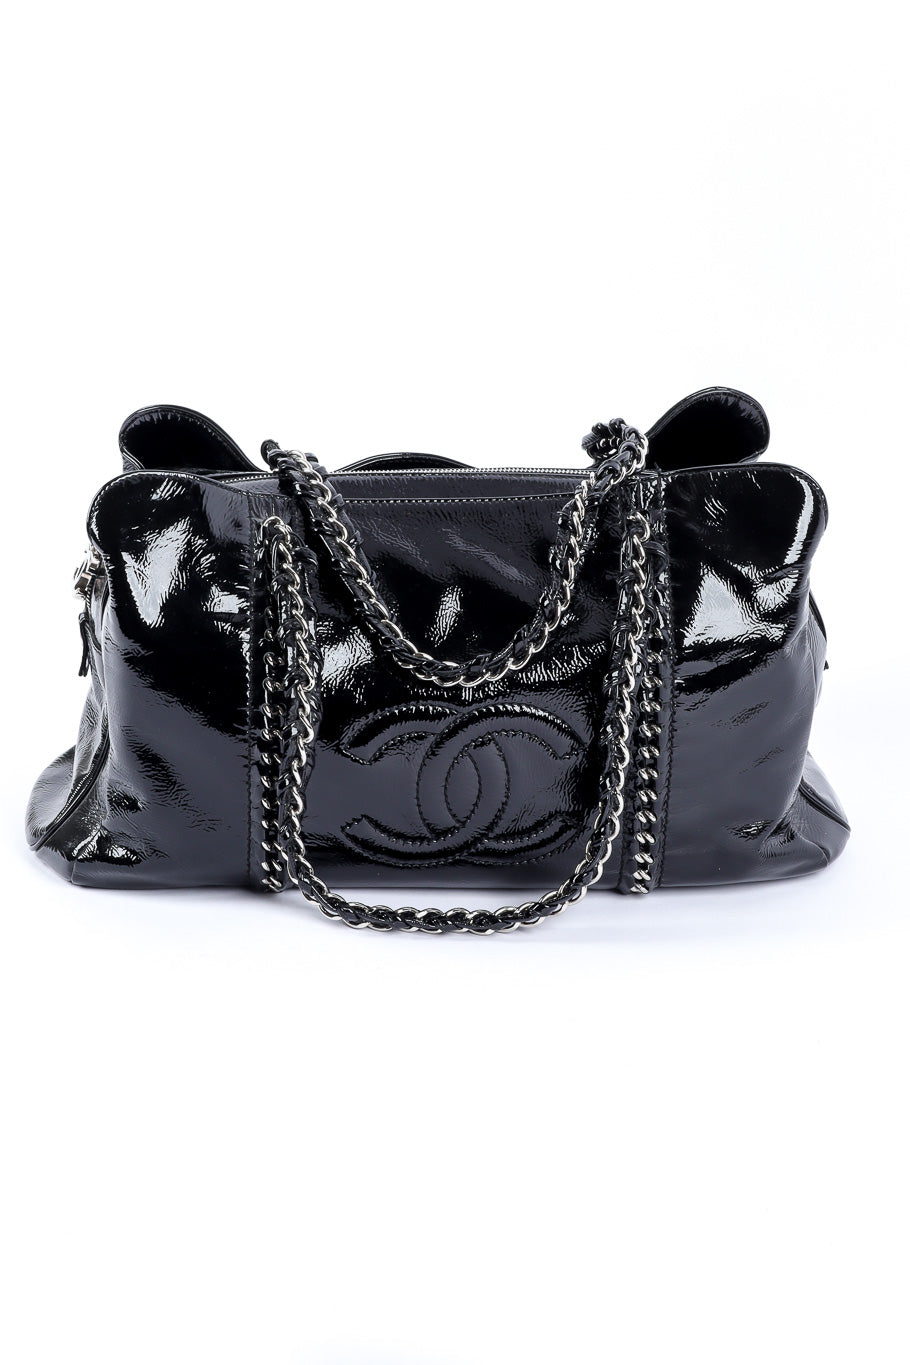 Mini Luxe Handbag  Luxe handbags, Bags, Handbag